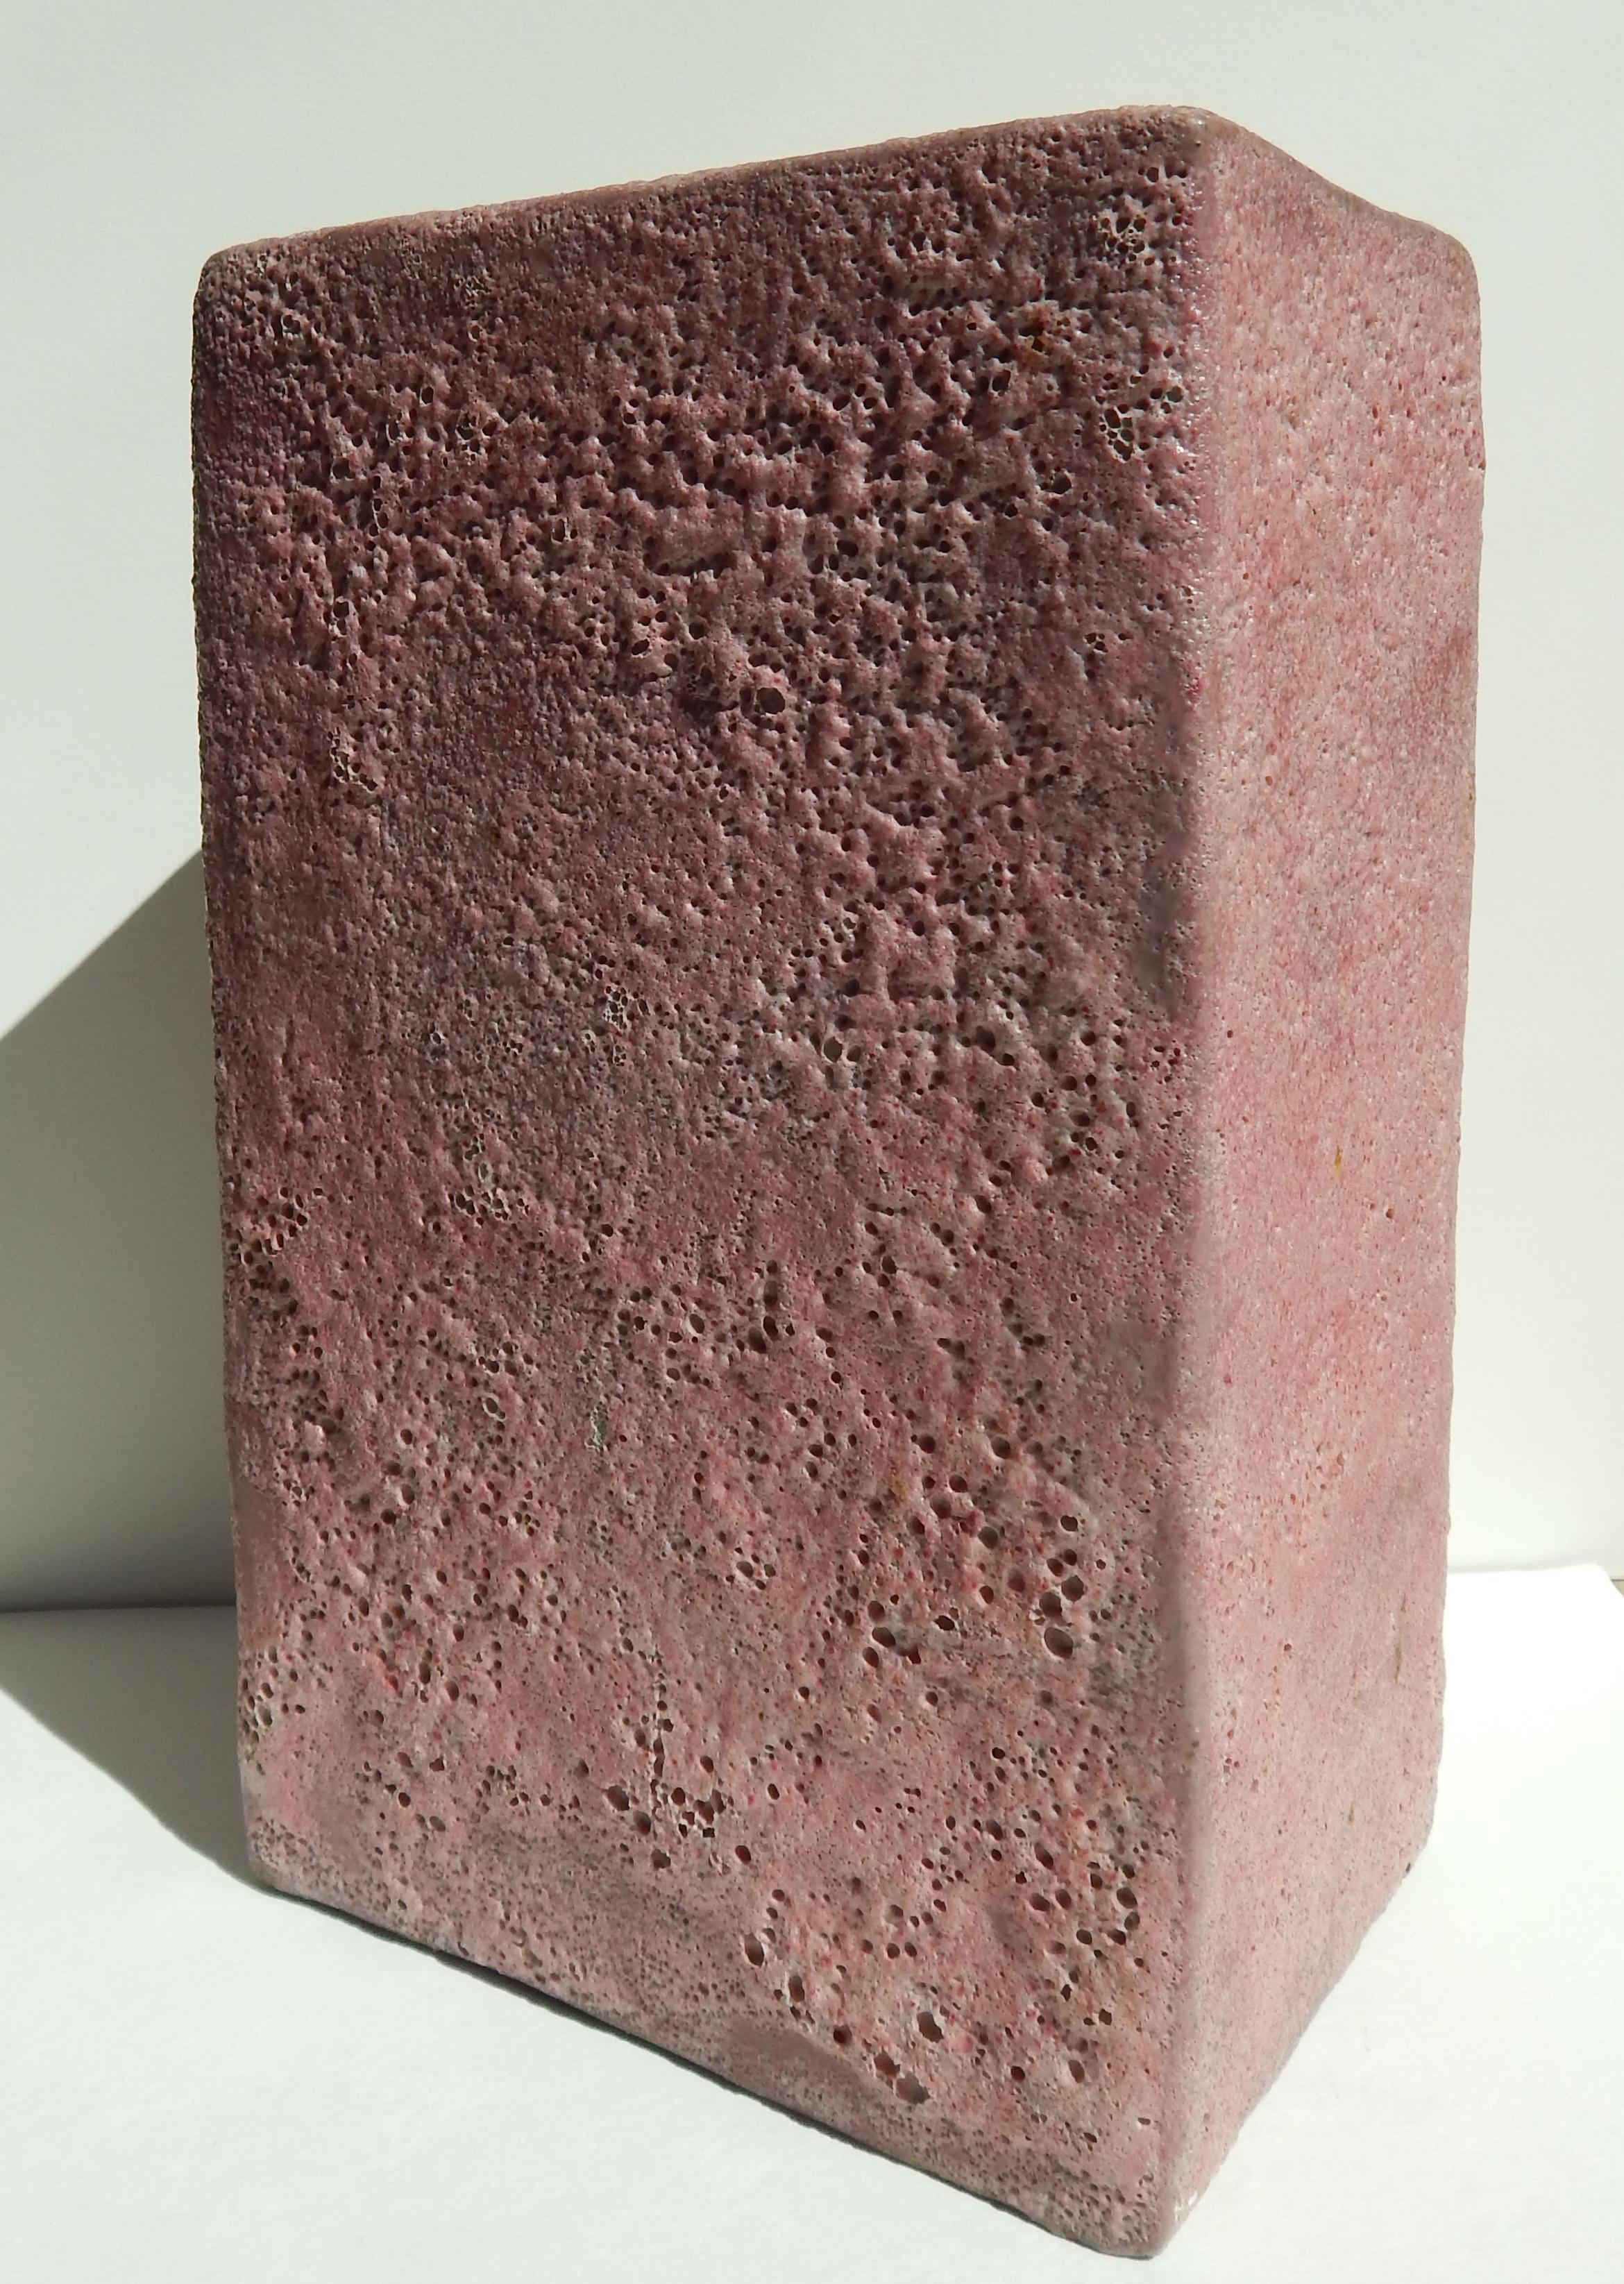 Grand vase rose à glaçure volcanique de la potière d'art californienne Beatrice Wood (1893-1998).
Signé en bas (deux fois) 